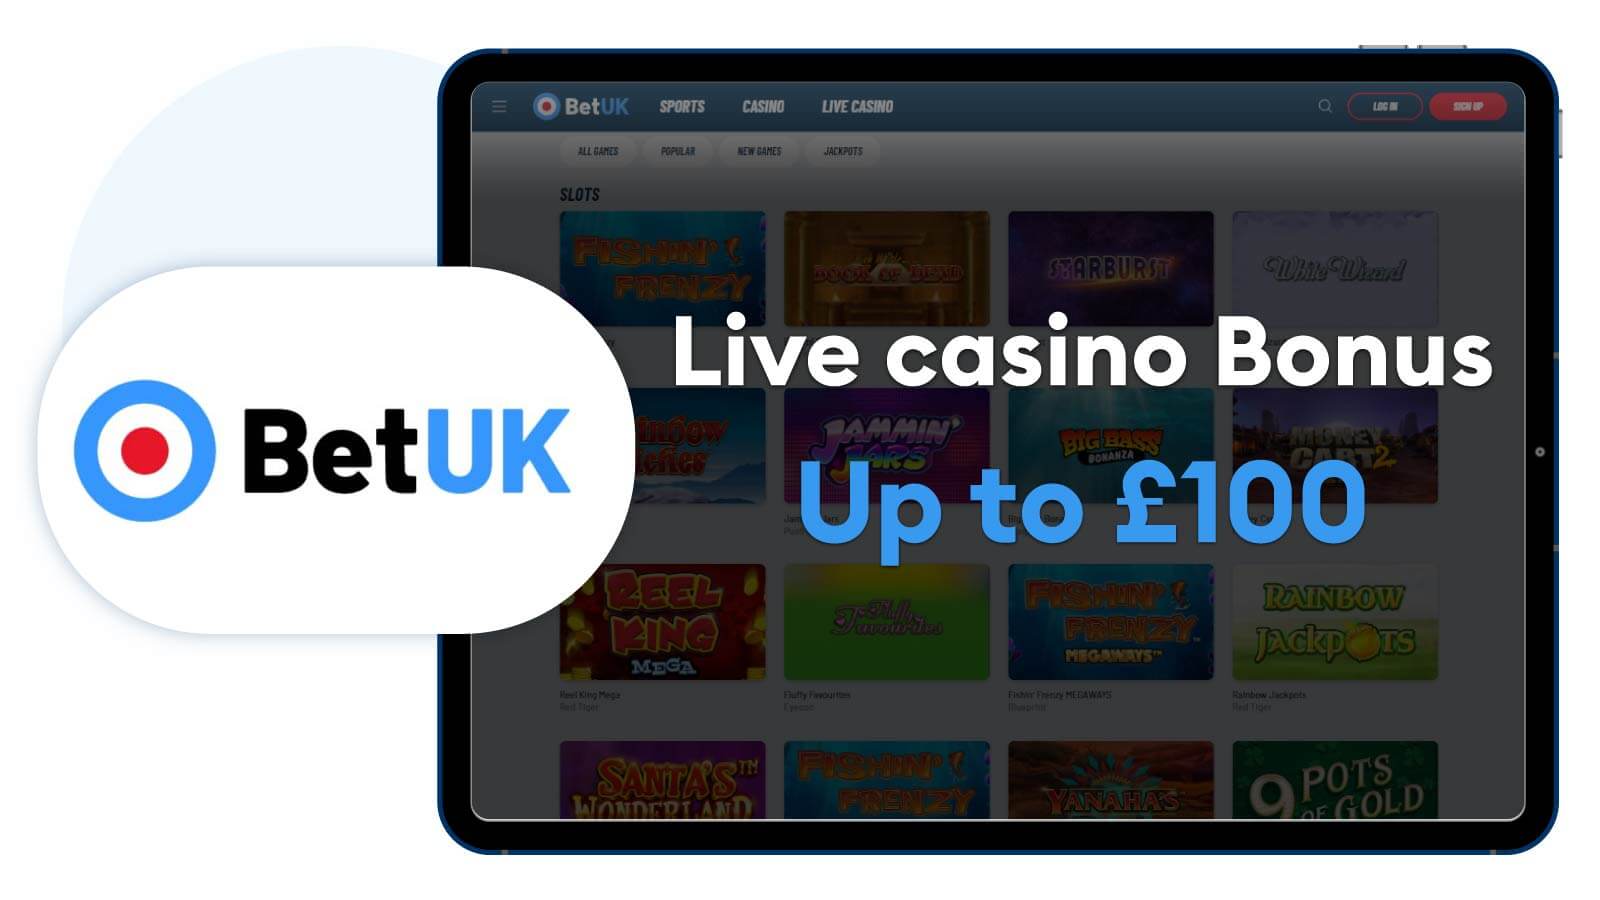 Best-live-online-casino-UK-welcome-bonus-Up-to-£100-at-BetUK-casino